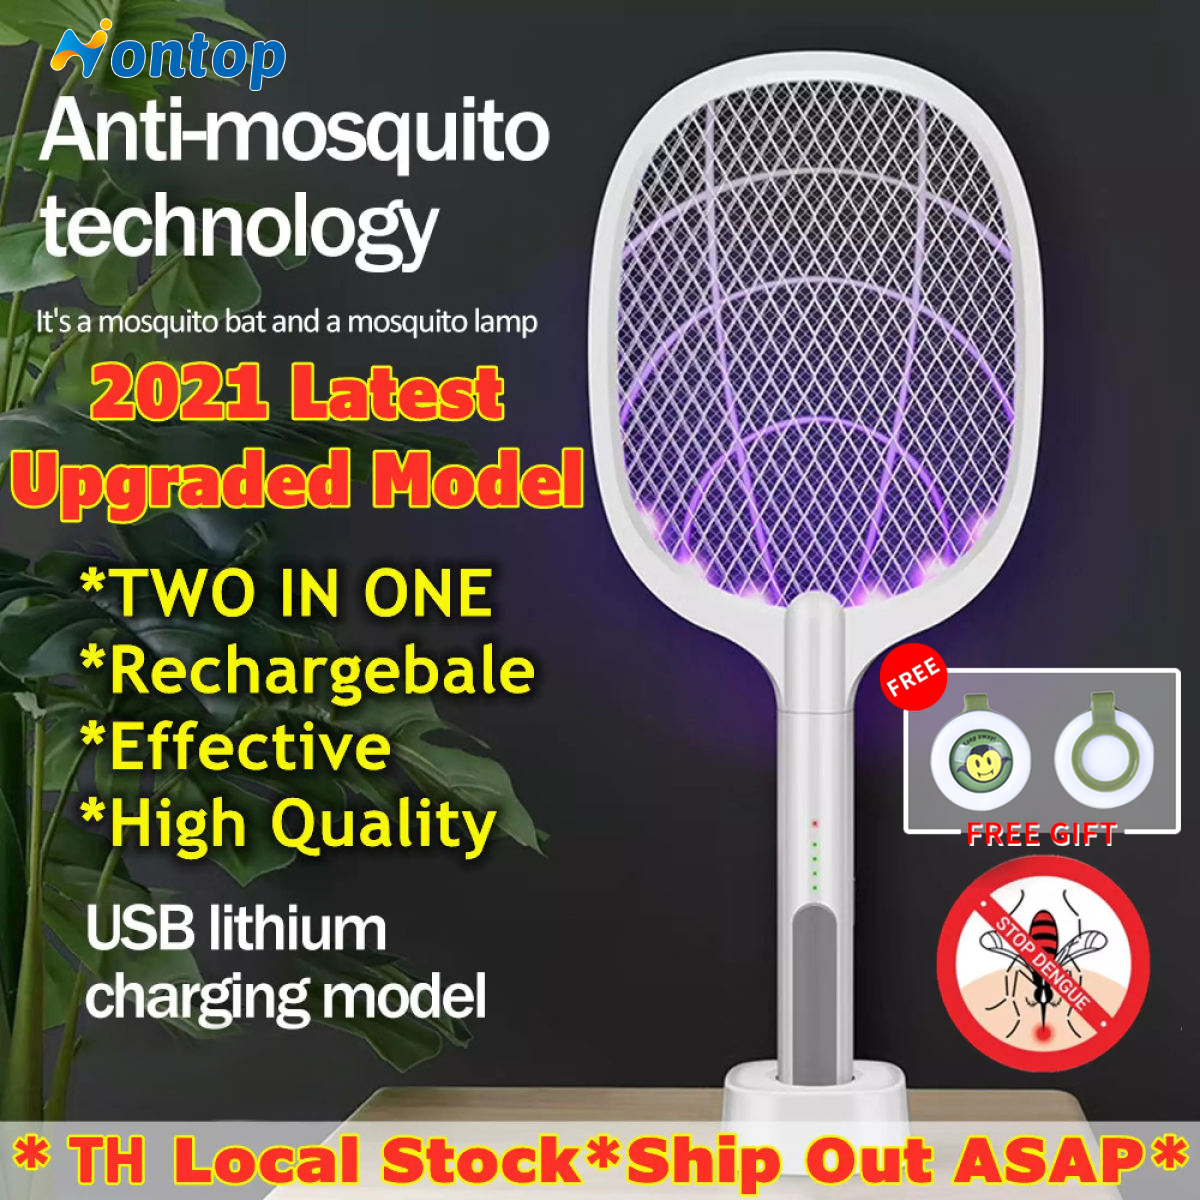 เครื่องตียุง 3000V เครื่องฆ่ายุงแบบชาร์จ USB 1200mAh ฆ่าแมลงวัน ไม้ตียุงไฟฟ้า 2in1 ไม้ตียุงไฟฟ้าเครื่องดักยุง Electric mosquito swatter